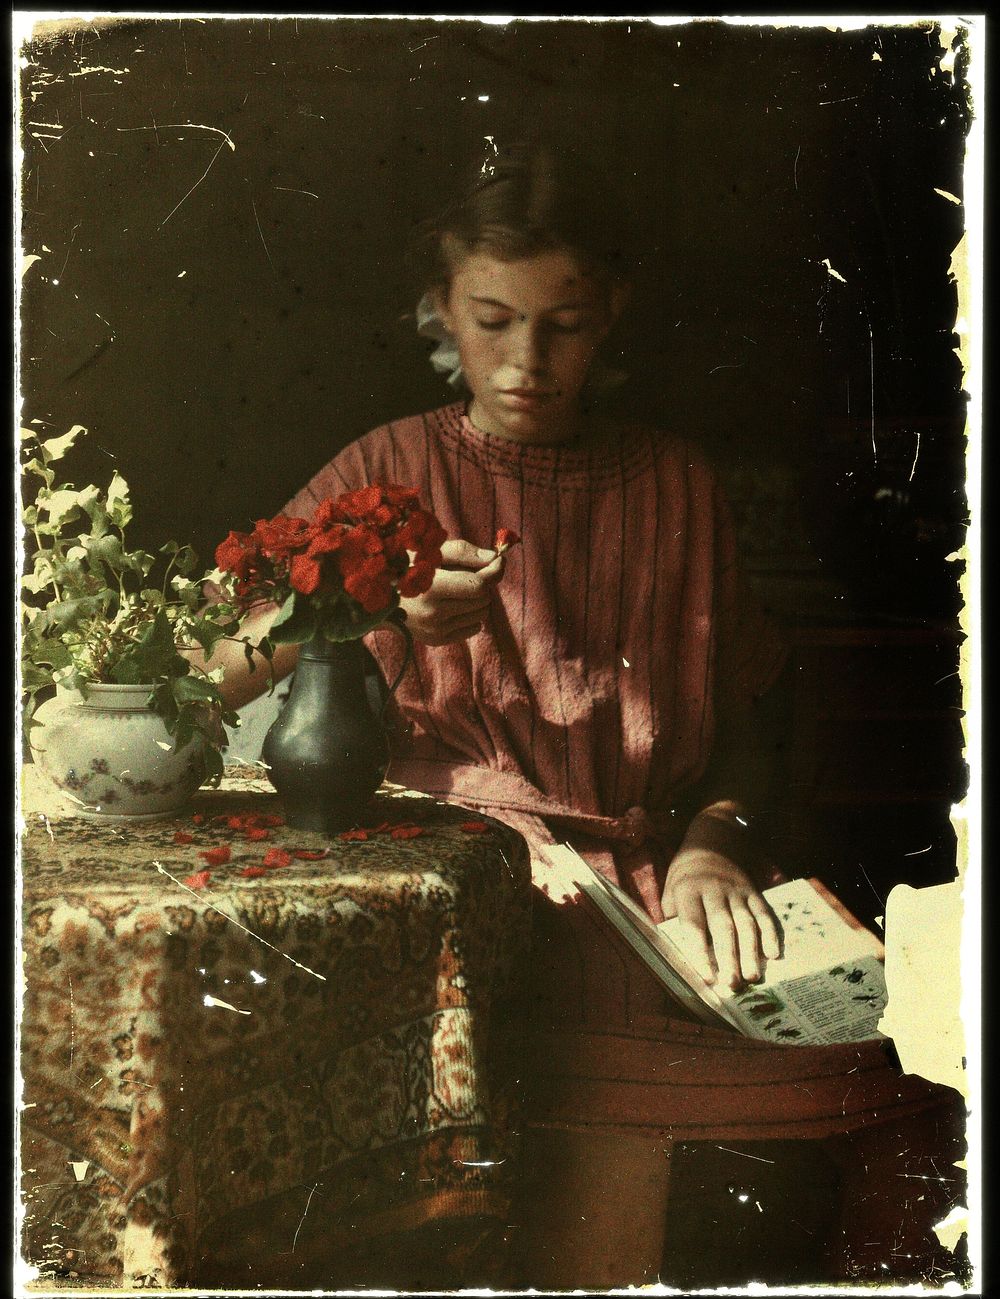 Meisje dat bloemblaadjes determineert (1907 - 1930) by anonymous